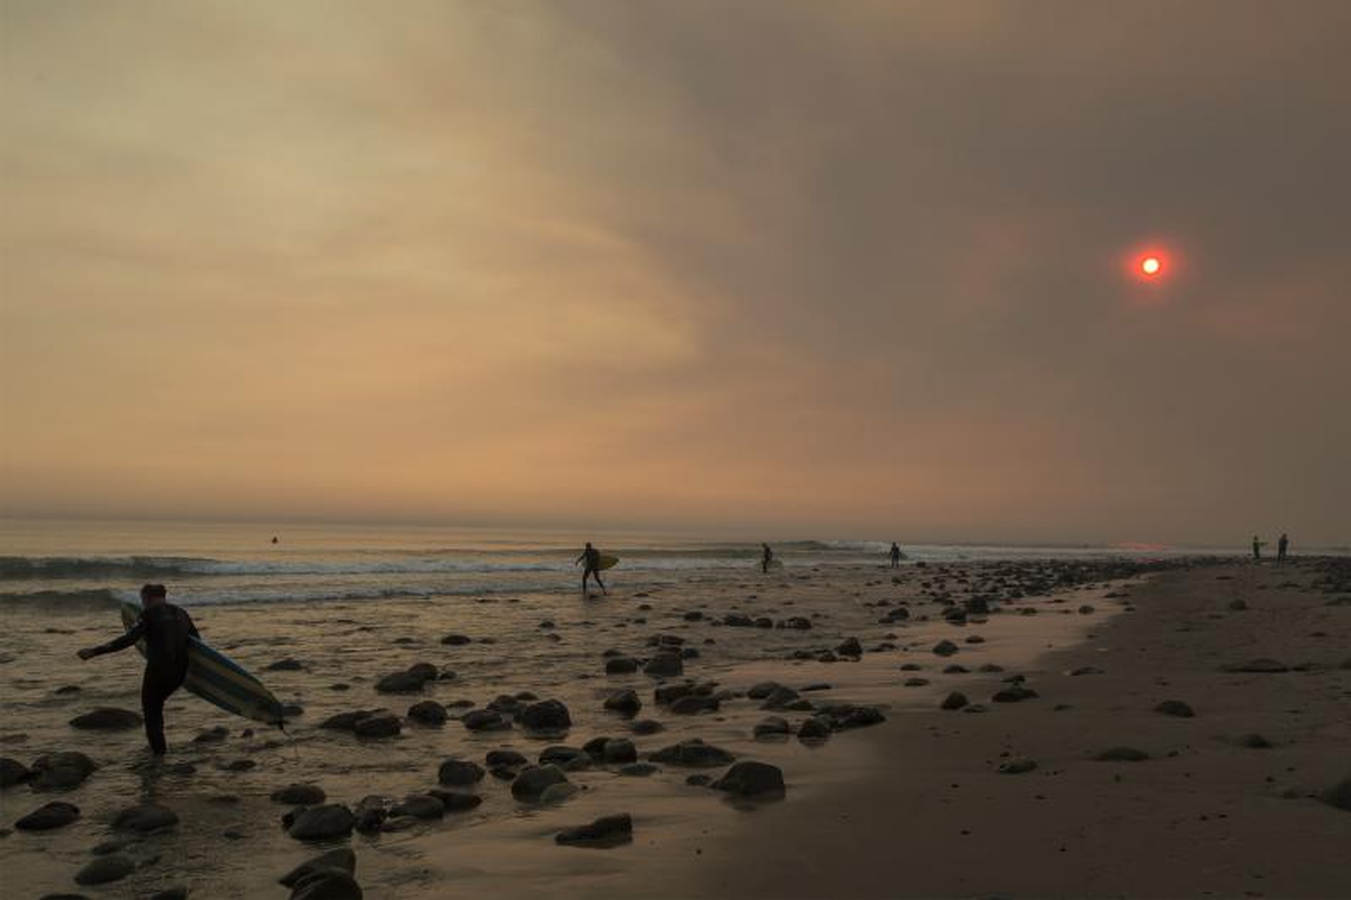 Un cielo lleno de humo alrededor de los surfistas. El fuego continúa creciendo y amenaza a las comunidades desde Carpinteria hasta Santa Barbara, California. El incendio se ha extendido a lo largo de 365 millas hasta el momento y ha destruido unas 800 estructuras desde que comenzó el 5 de diciembre en Ojai, California.